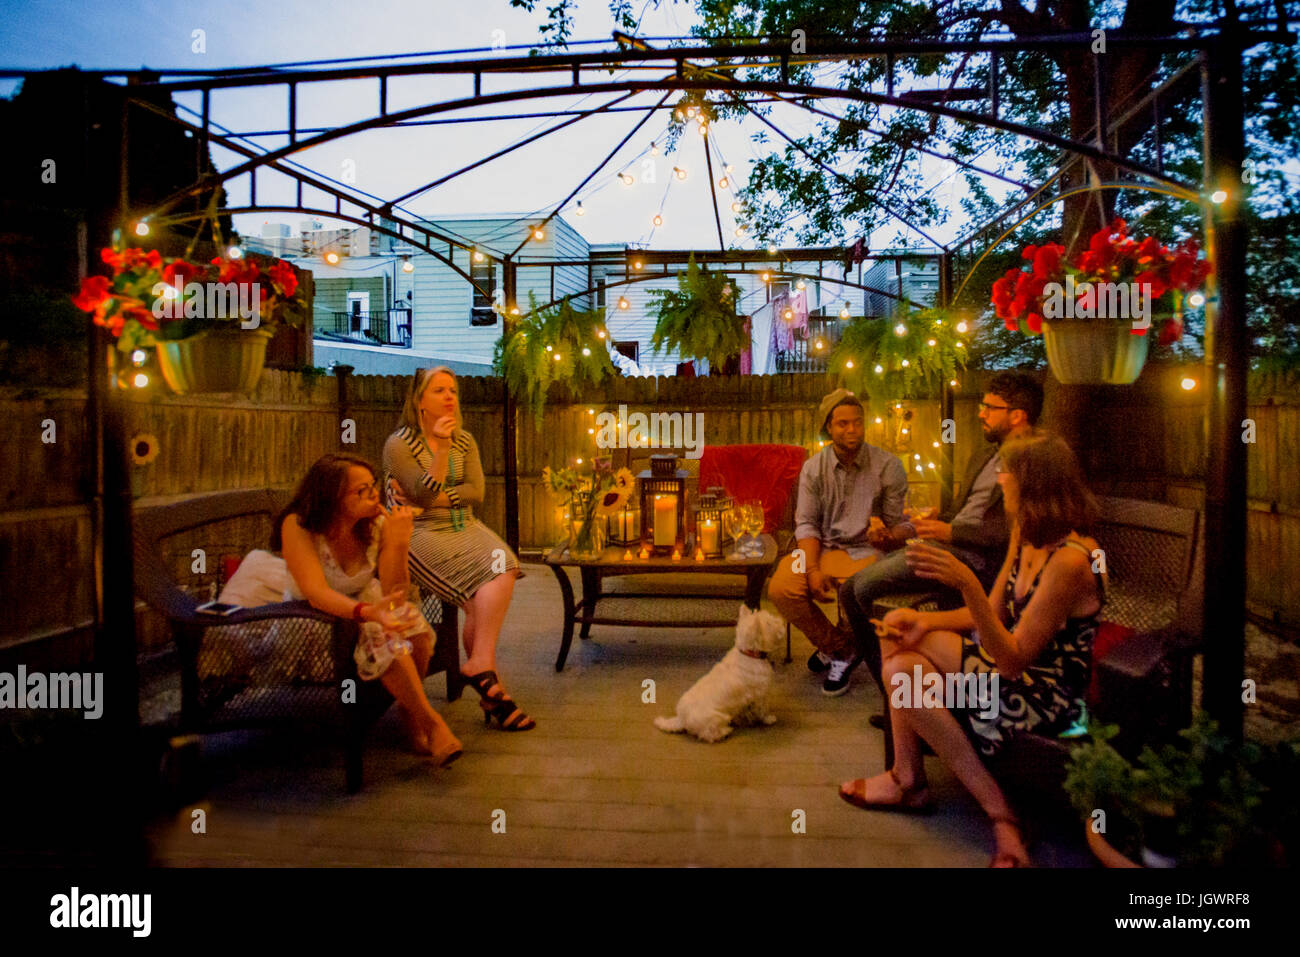 Groupe de personnes at garden party, assis sous pergola au crépuscule, boire du vin Banque D'Images